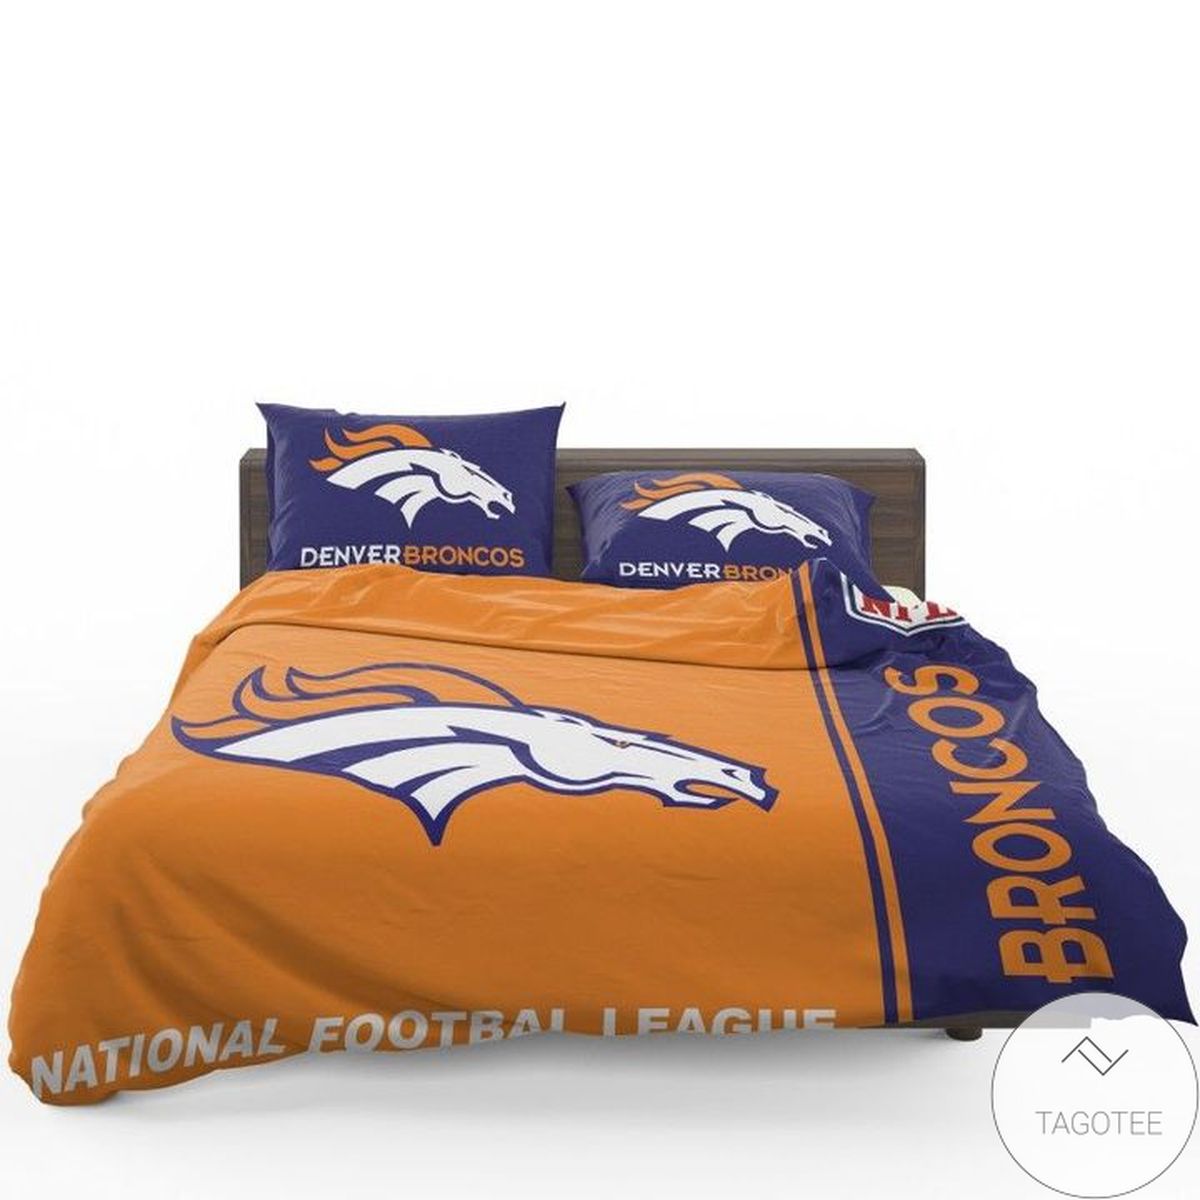 Denver Broncos National Football League Bedding Set